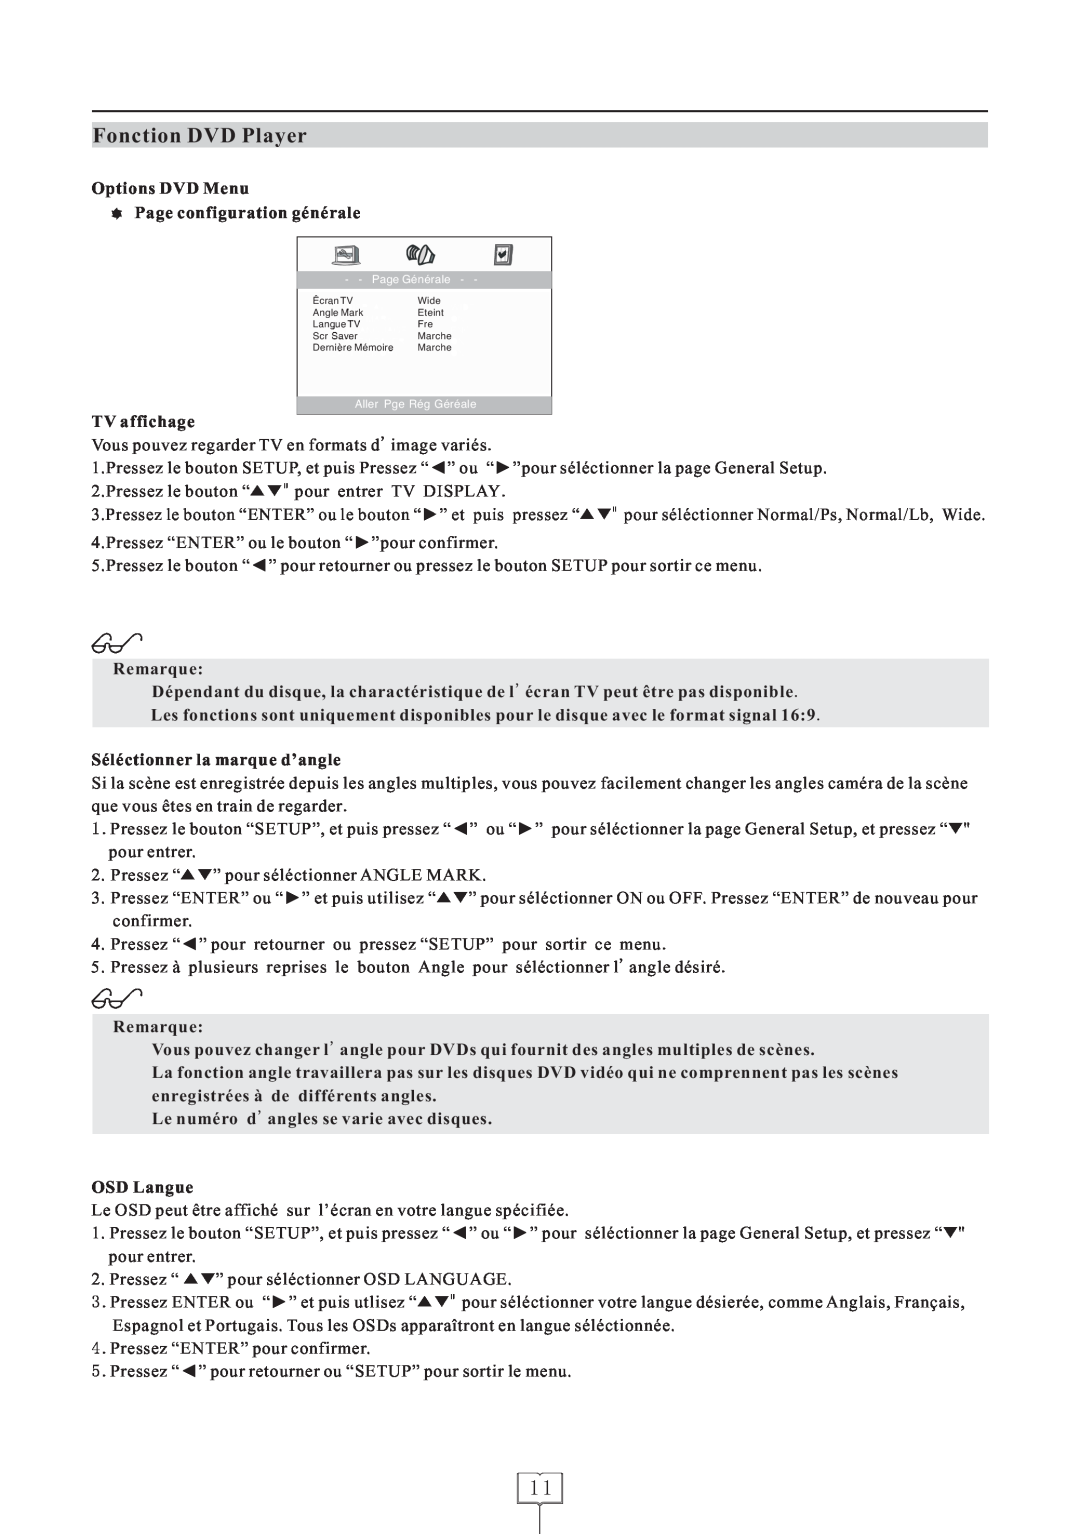 Curtis LCDVD152 manual Options DVD Menu Page configuration générale, TV affichage, Remarque, Séléctionner la marque d’angle 